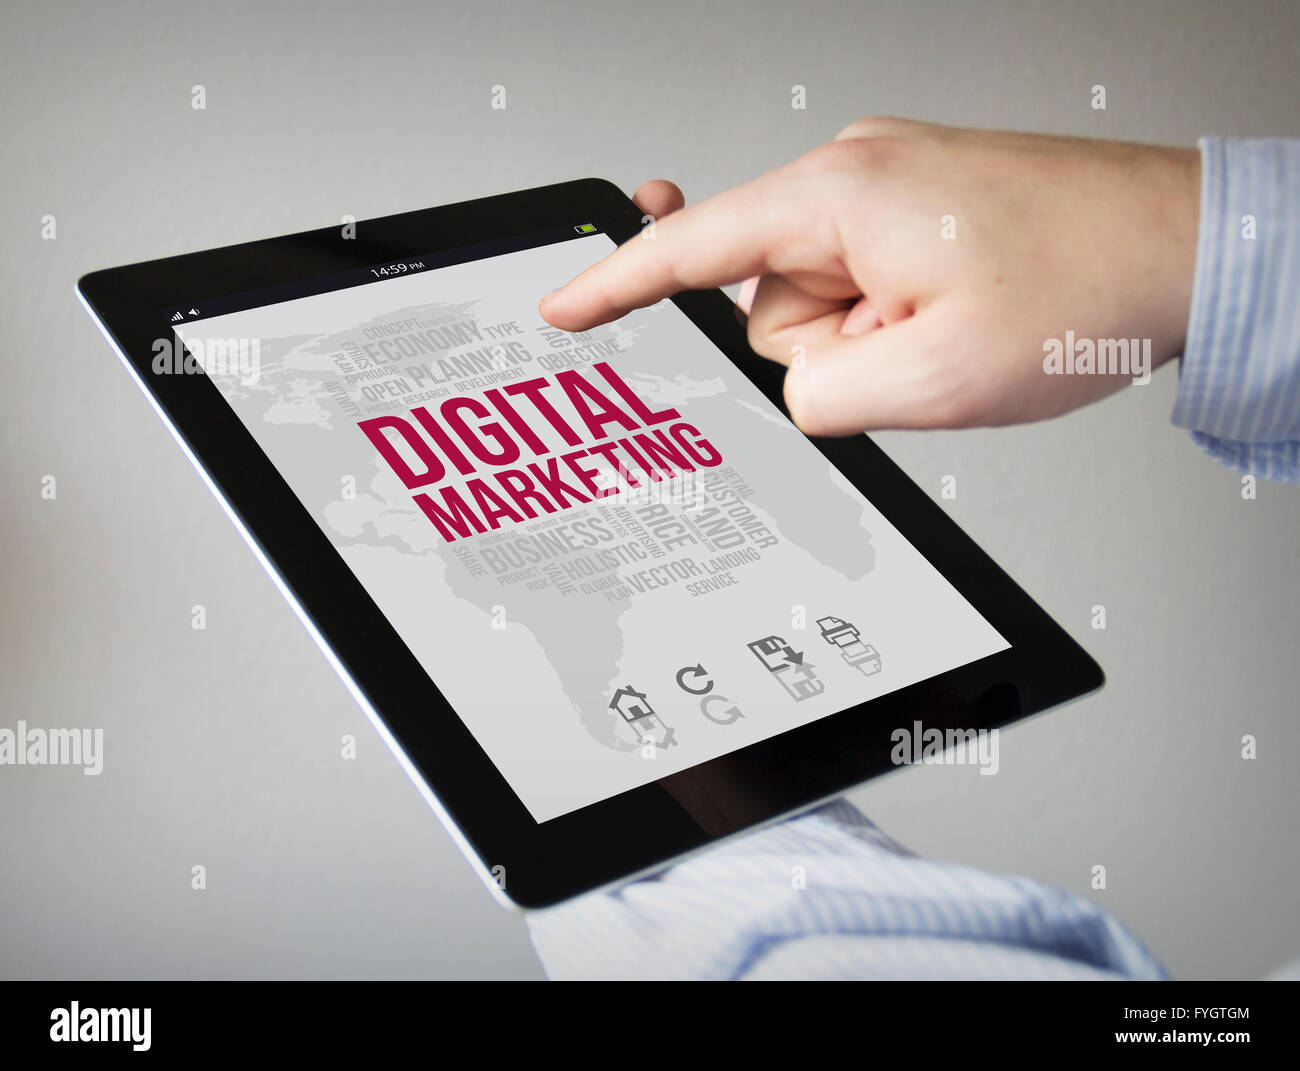 Nouvelles technologies concept : les mains à l'écran tactile Tablet avec interface générée par ordinateur digital marketing Banque D'Images